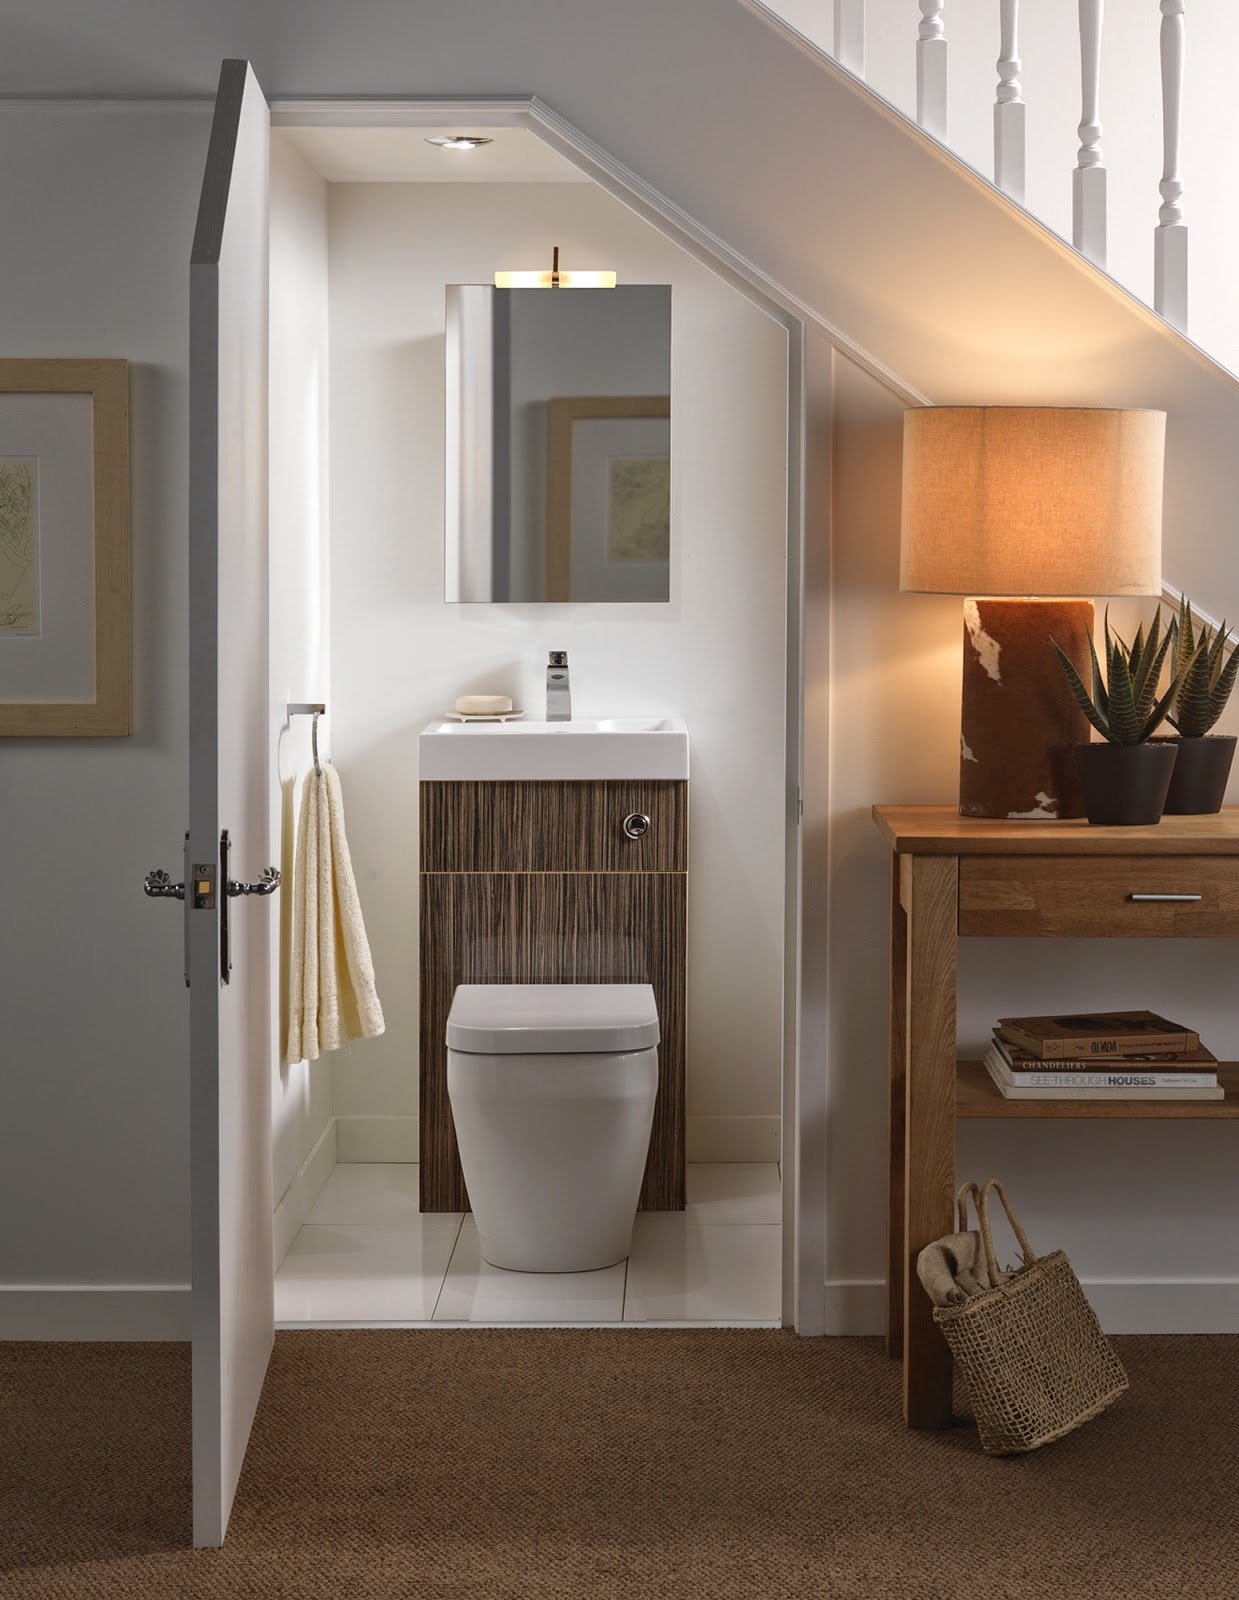 Bạn đang tìm kiếm một mẫu nhà vệ sinh dưới cầu thang đáp ứng được yêu cầu về thẩm mỹ và tiện nghi? Chúng tôi có nhiều mẫu thiết kế đa dạng, từ hiện đại đến cổ điển, từ tiết kiệm không gian đến trang thiết bị đầy đủ. Hãy để chúng tôi giúp bạn tạo ra một không gian hoàn hảo cho nhà vệ sinh của bạn.